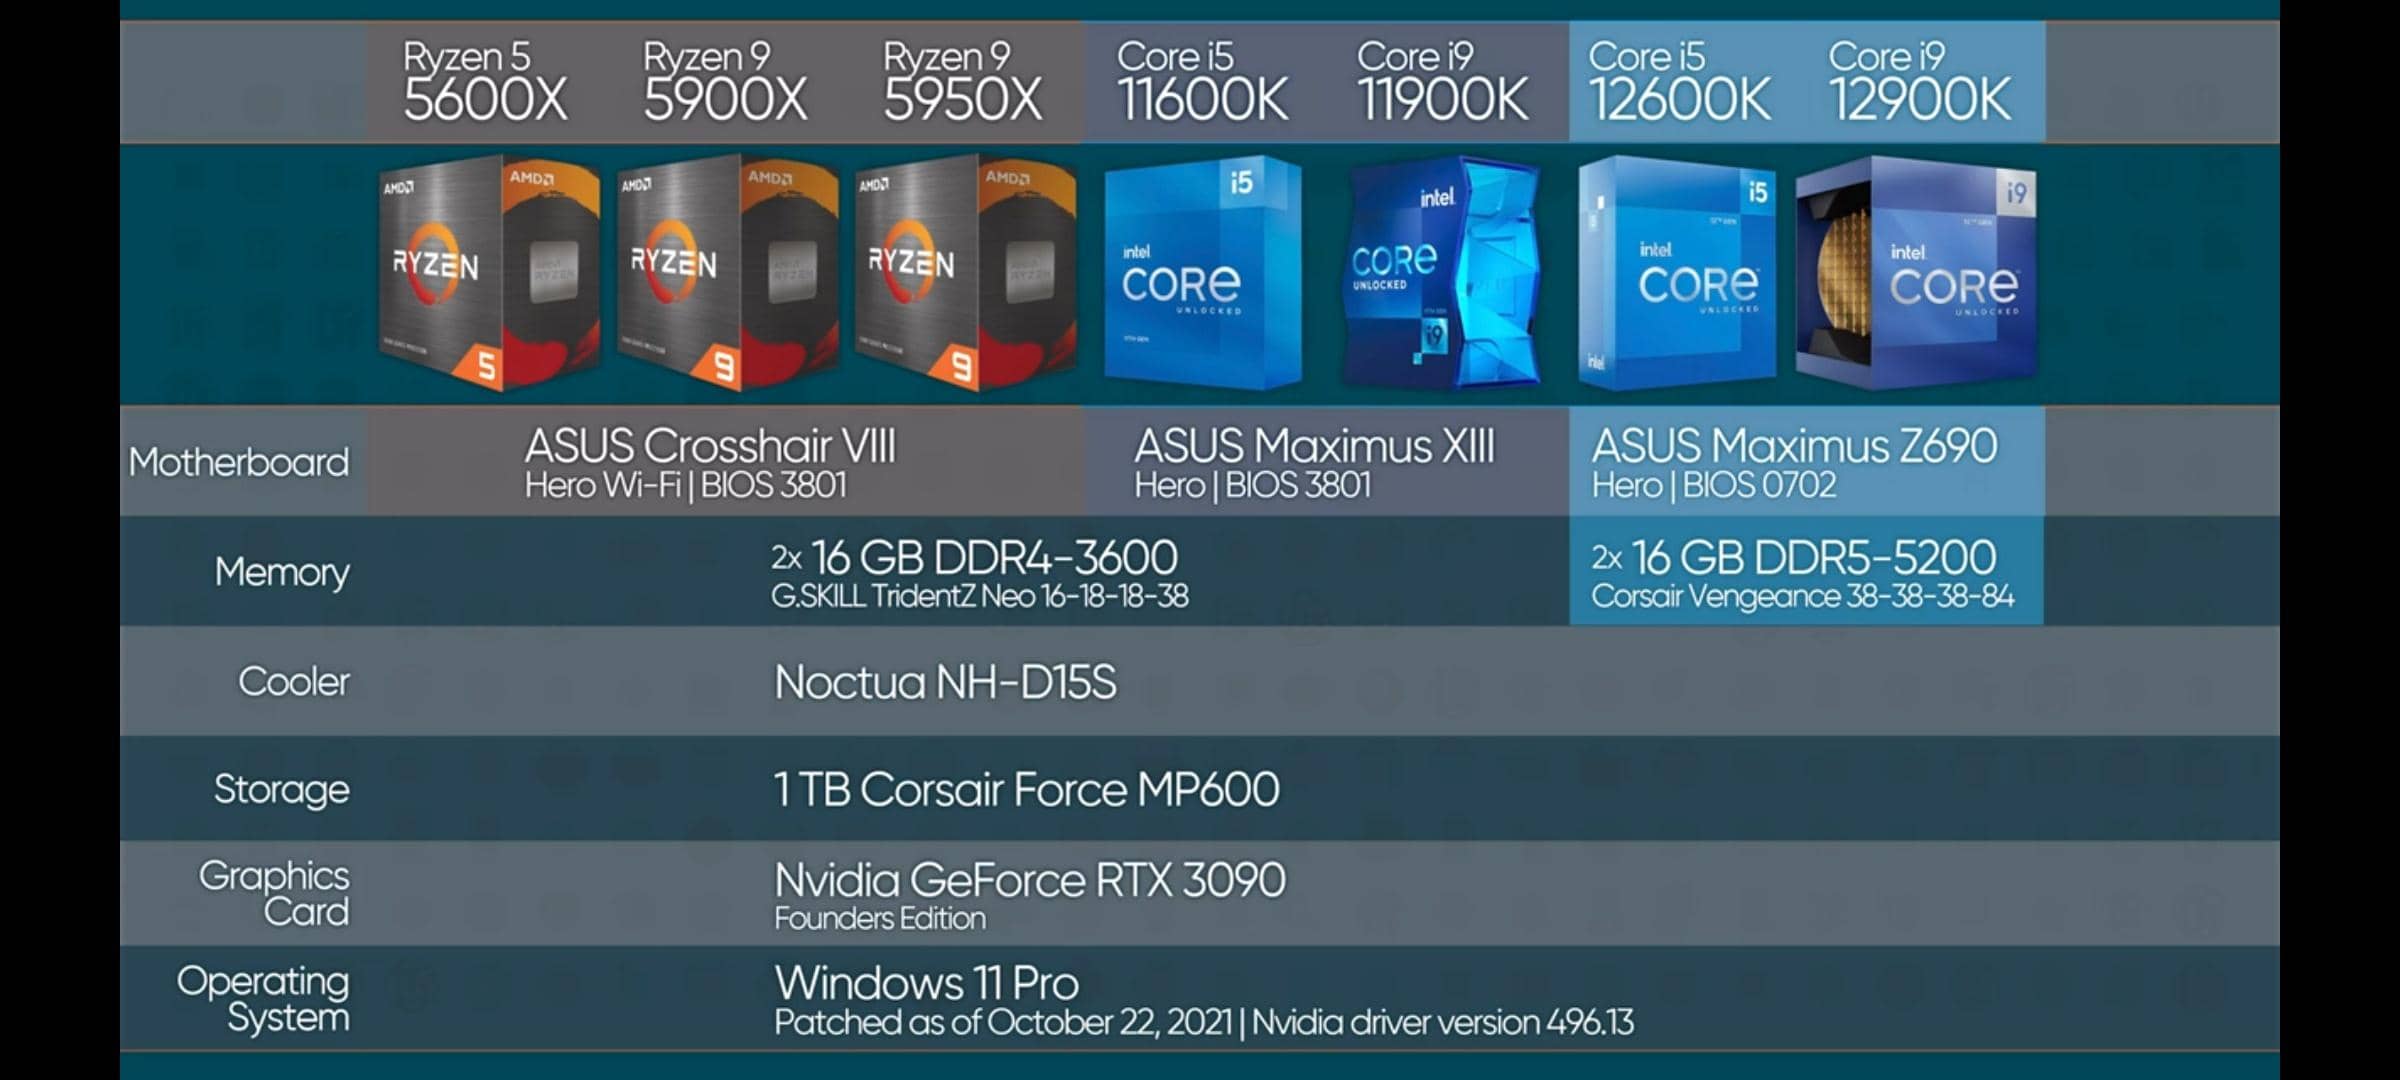 12600kf характеристики. I5 12600k. Core i5 12600k. Процессор Intel Core i5 последнего поколения. Core i9-12900k i5 12600.